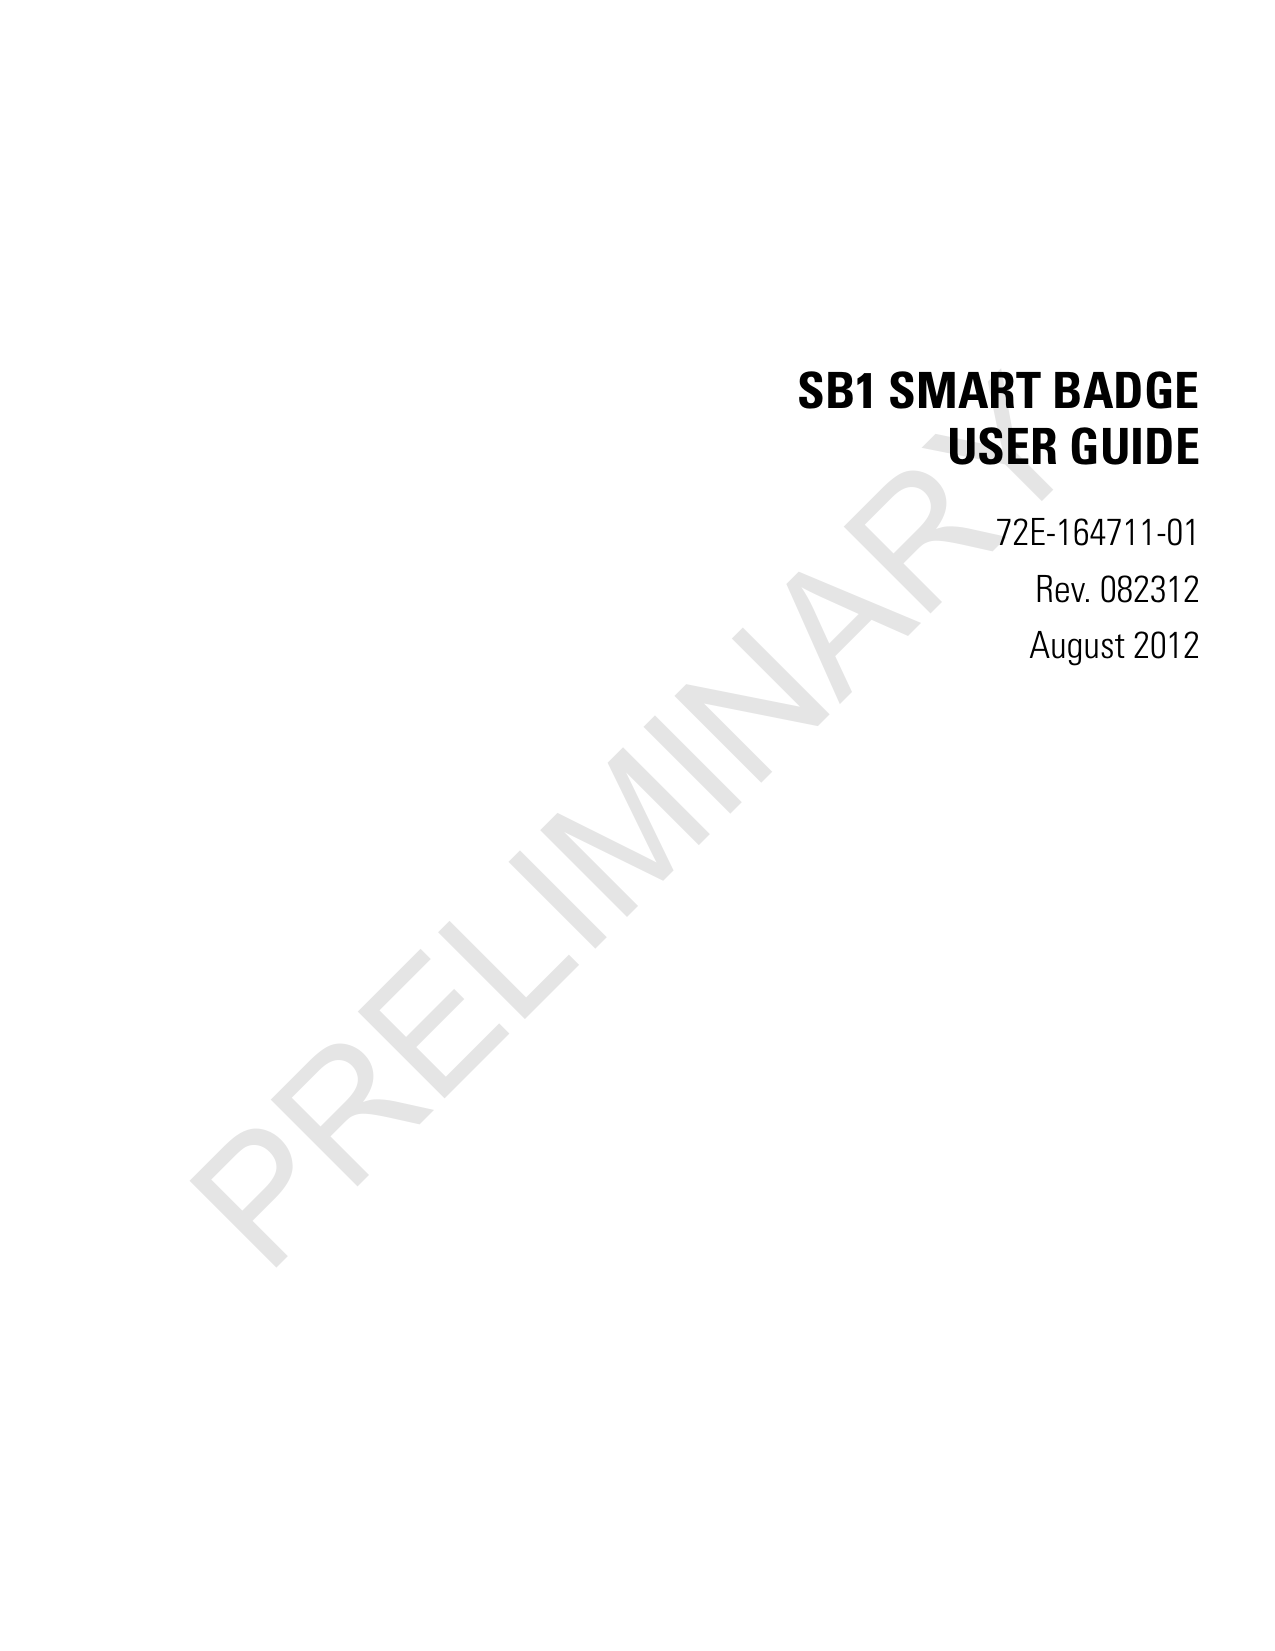 SB1 SMART BADGEUSER GUIDE72E-164711-01Rev. 082312August 2012PRELIMINARY